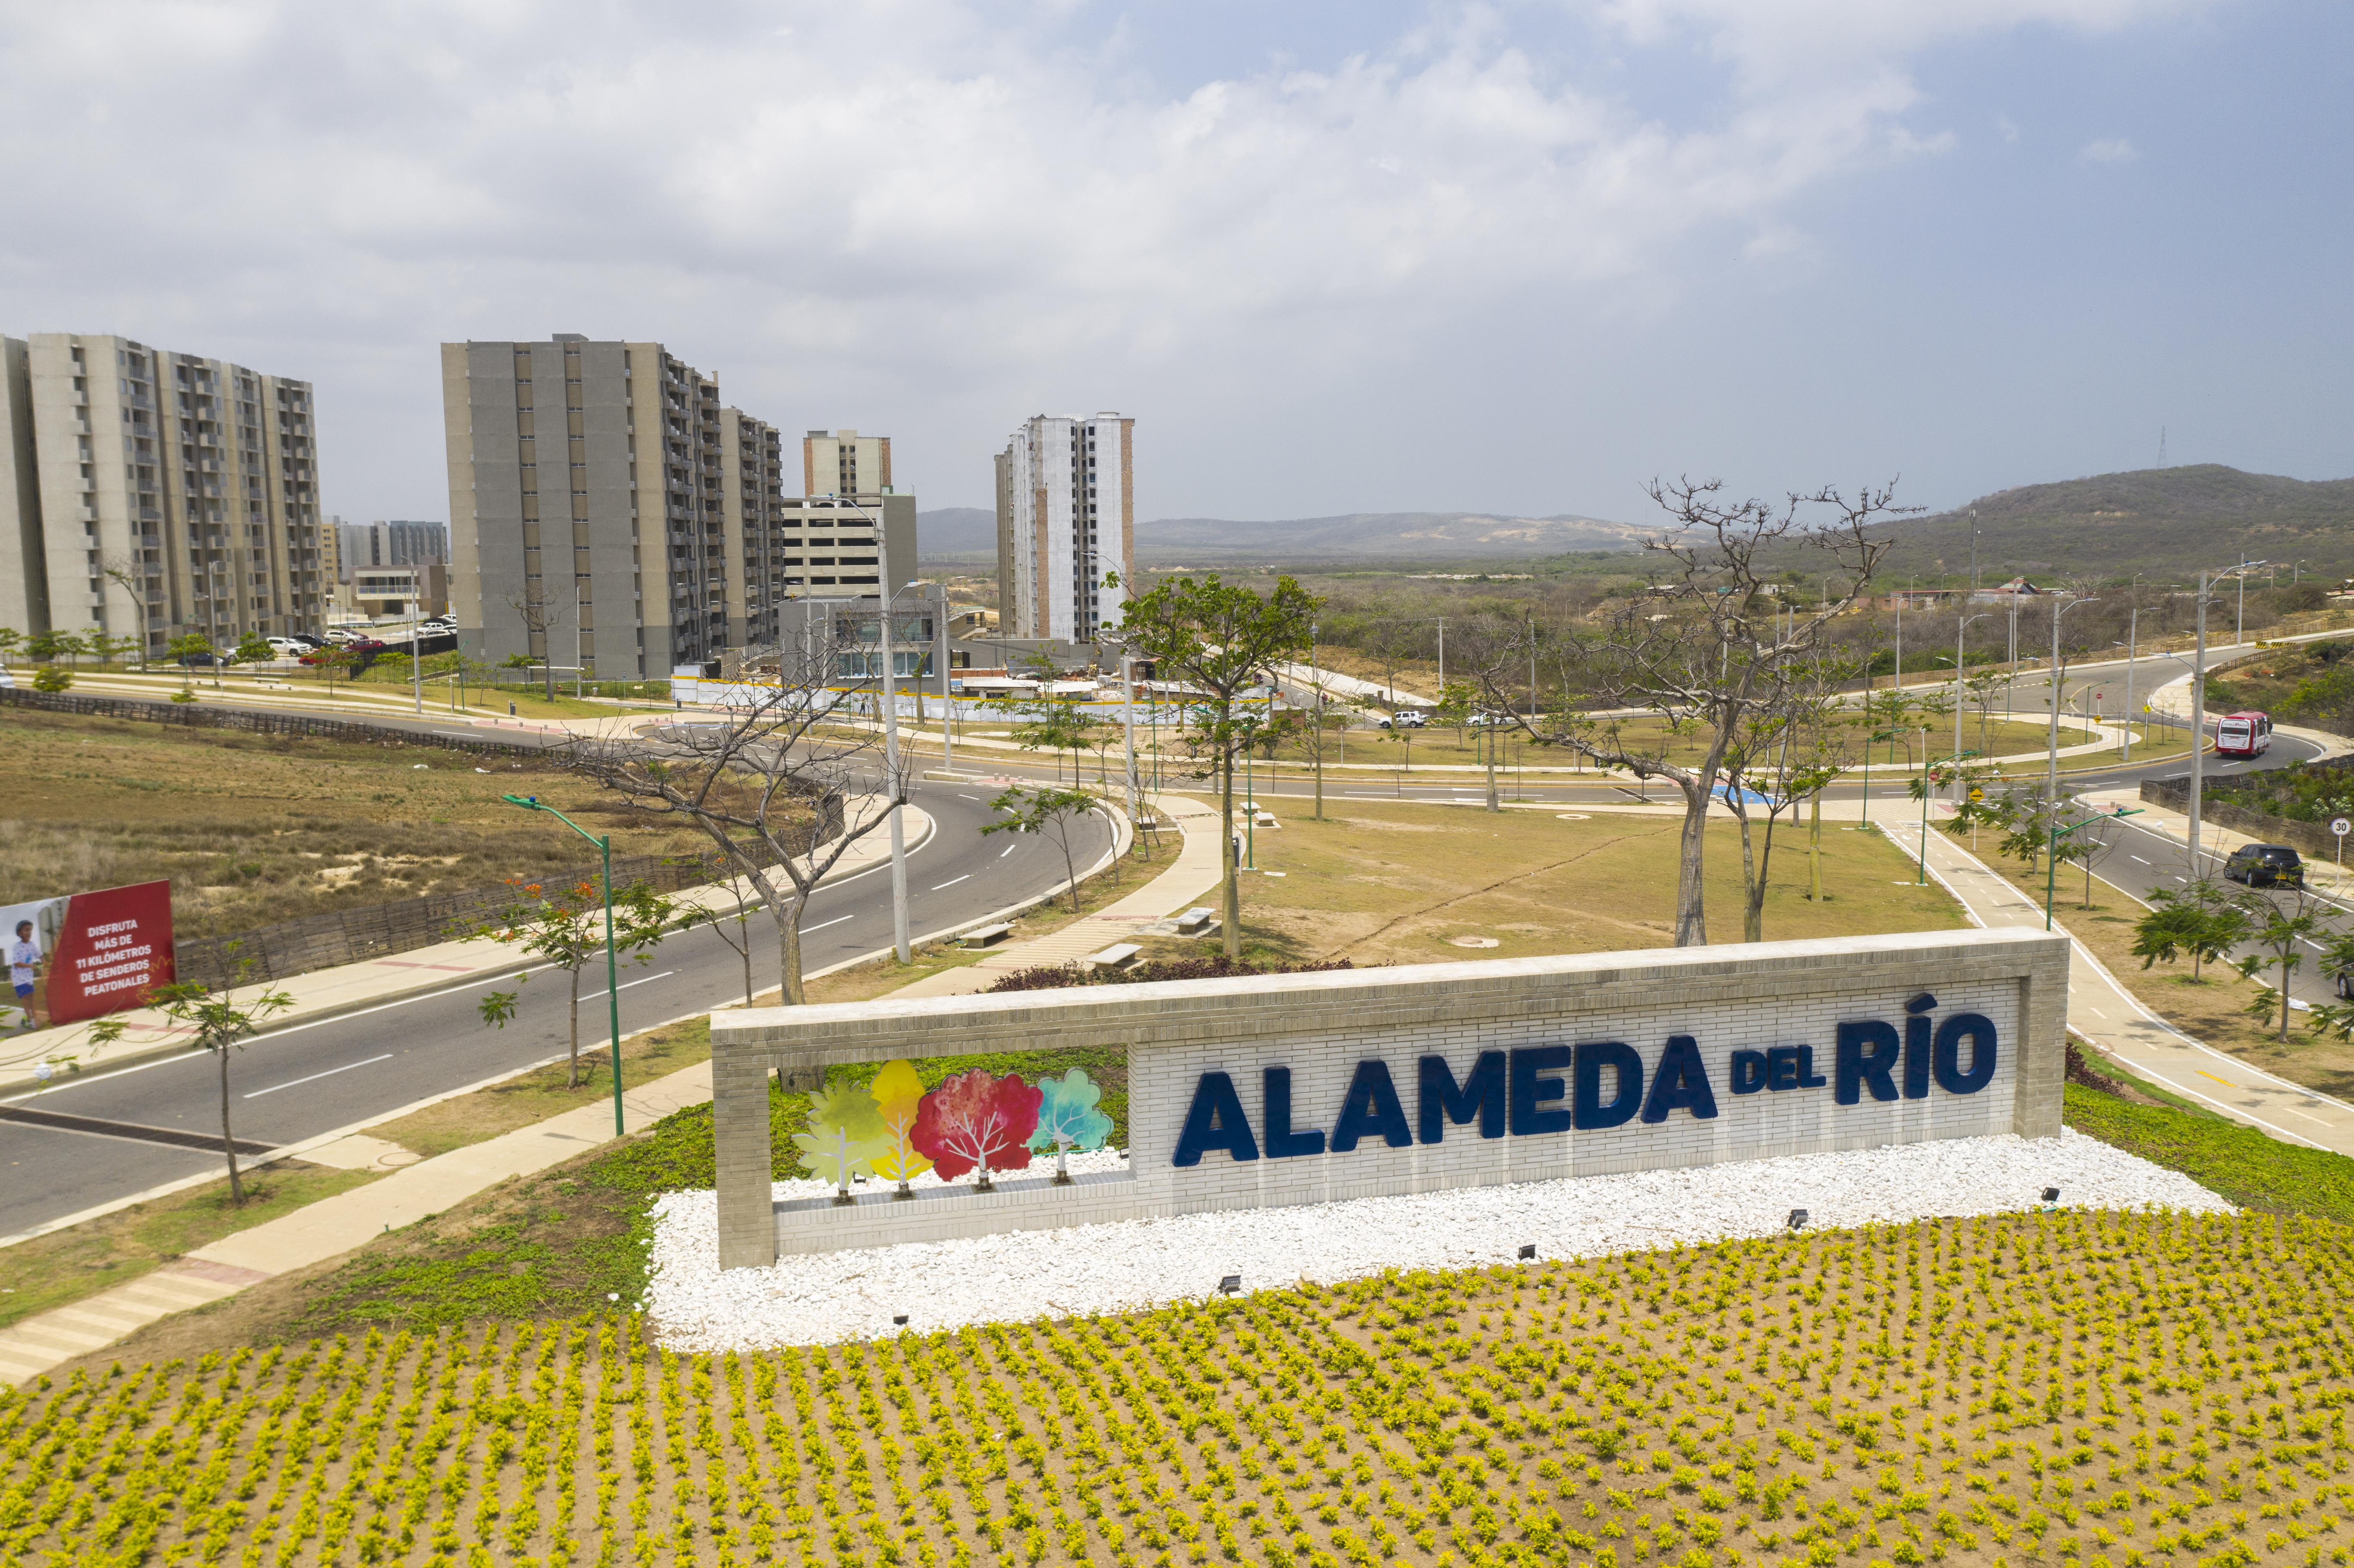 Alameda del Río ultima detalles para inaugurar complejo de parques